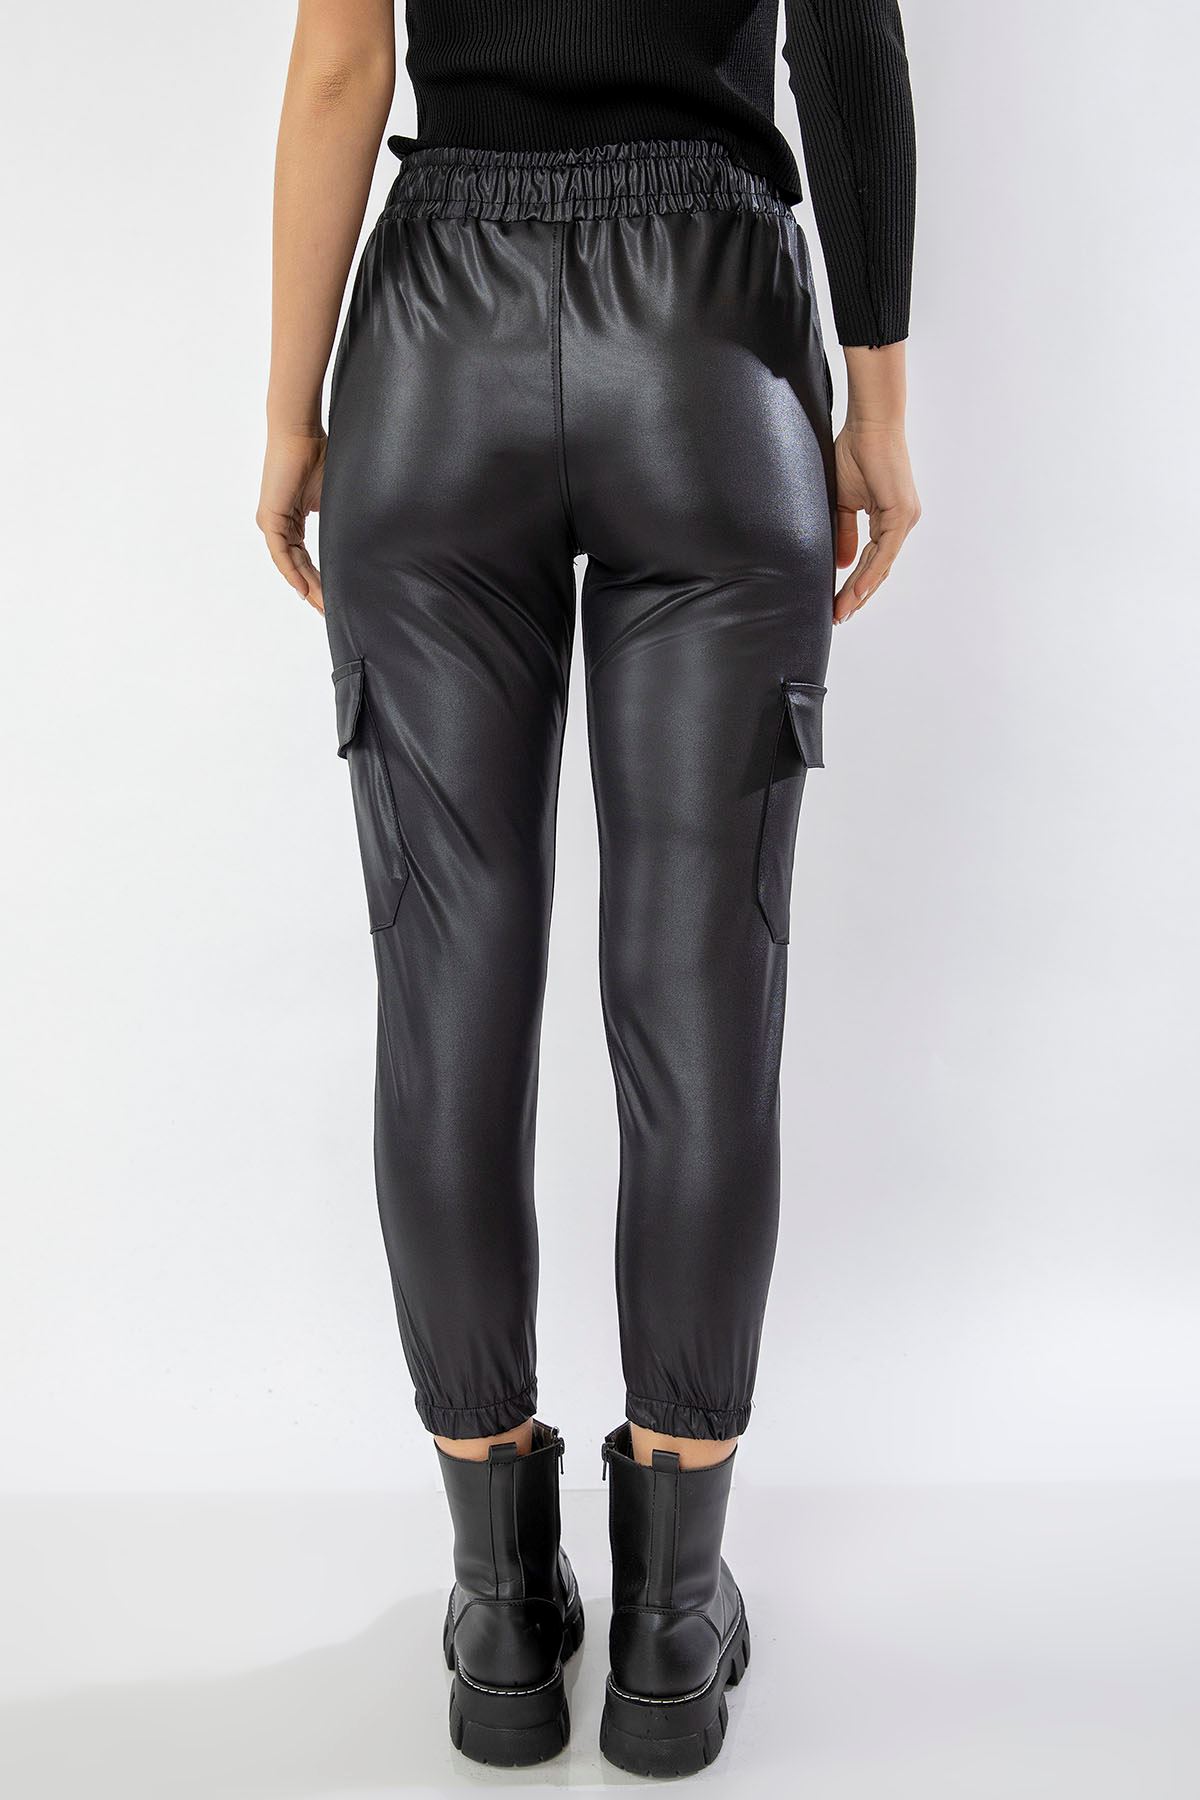 21K135-001-01 Спортивные штаны с кожаным эффектом-Чёрный - Чёрный